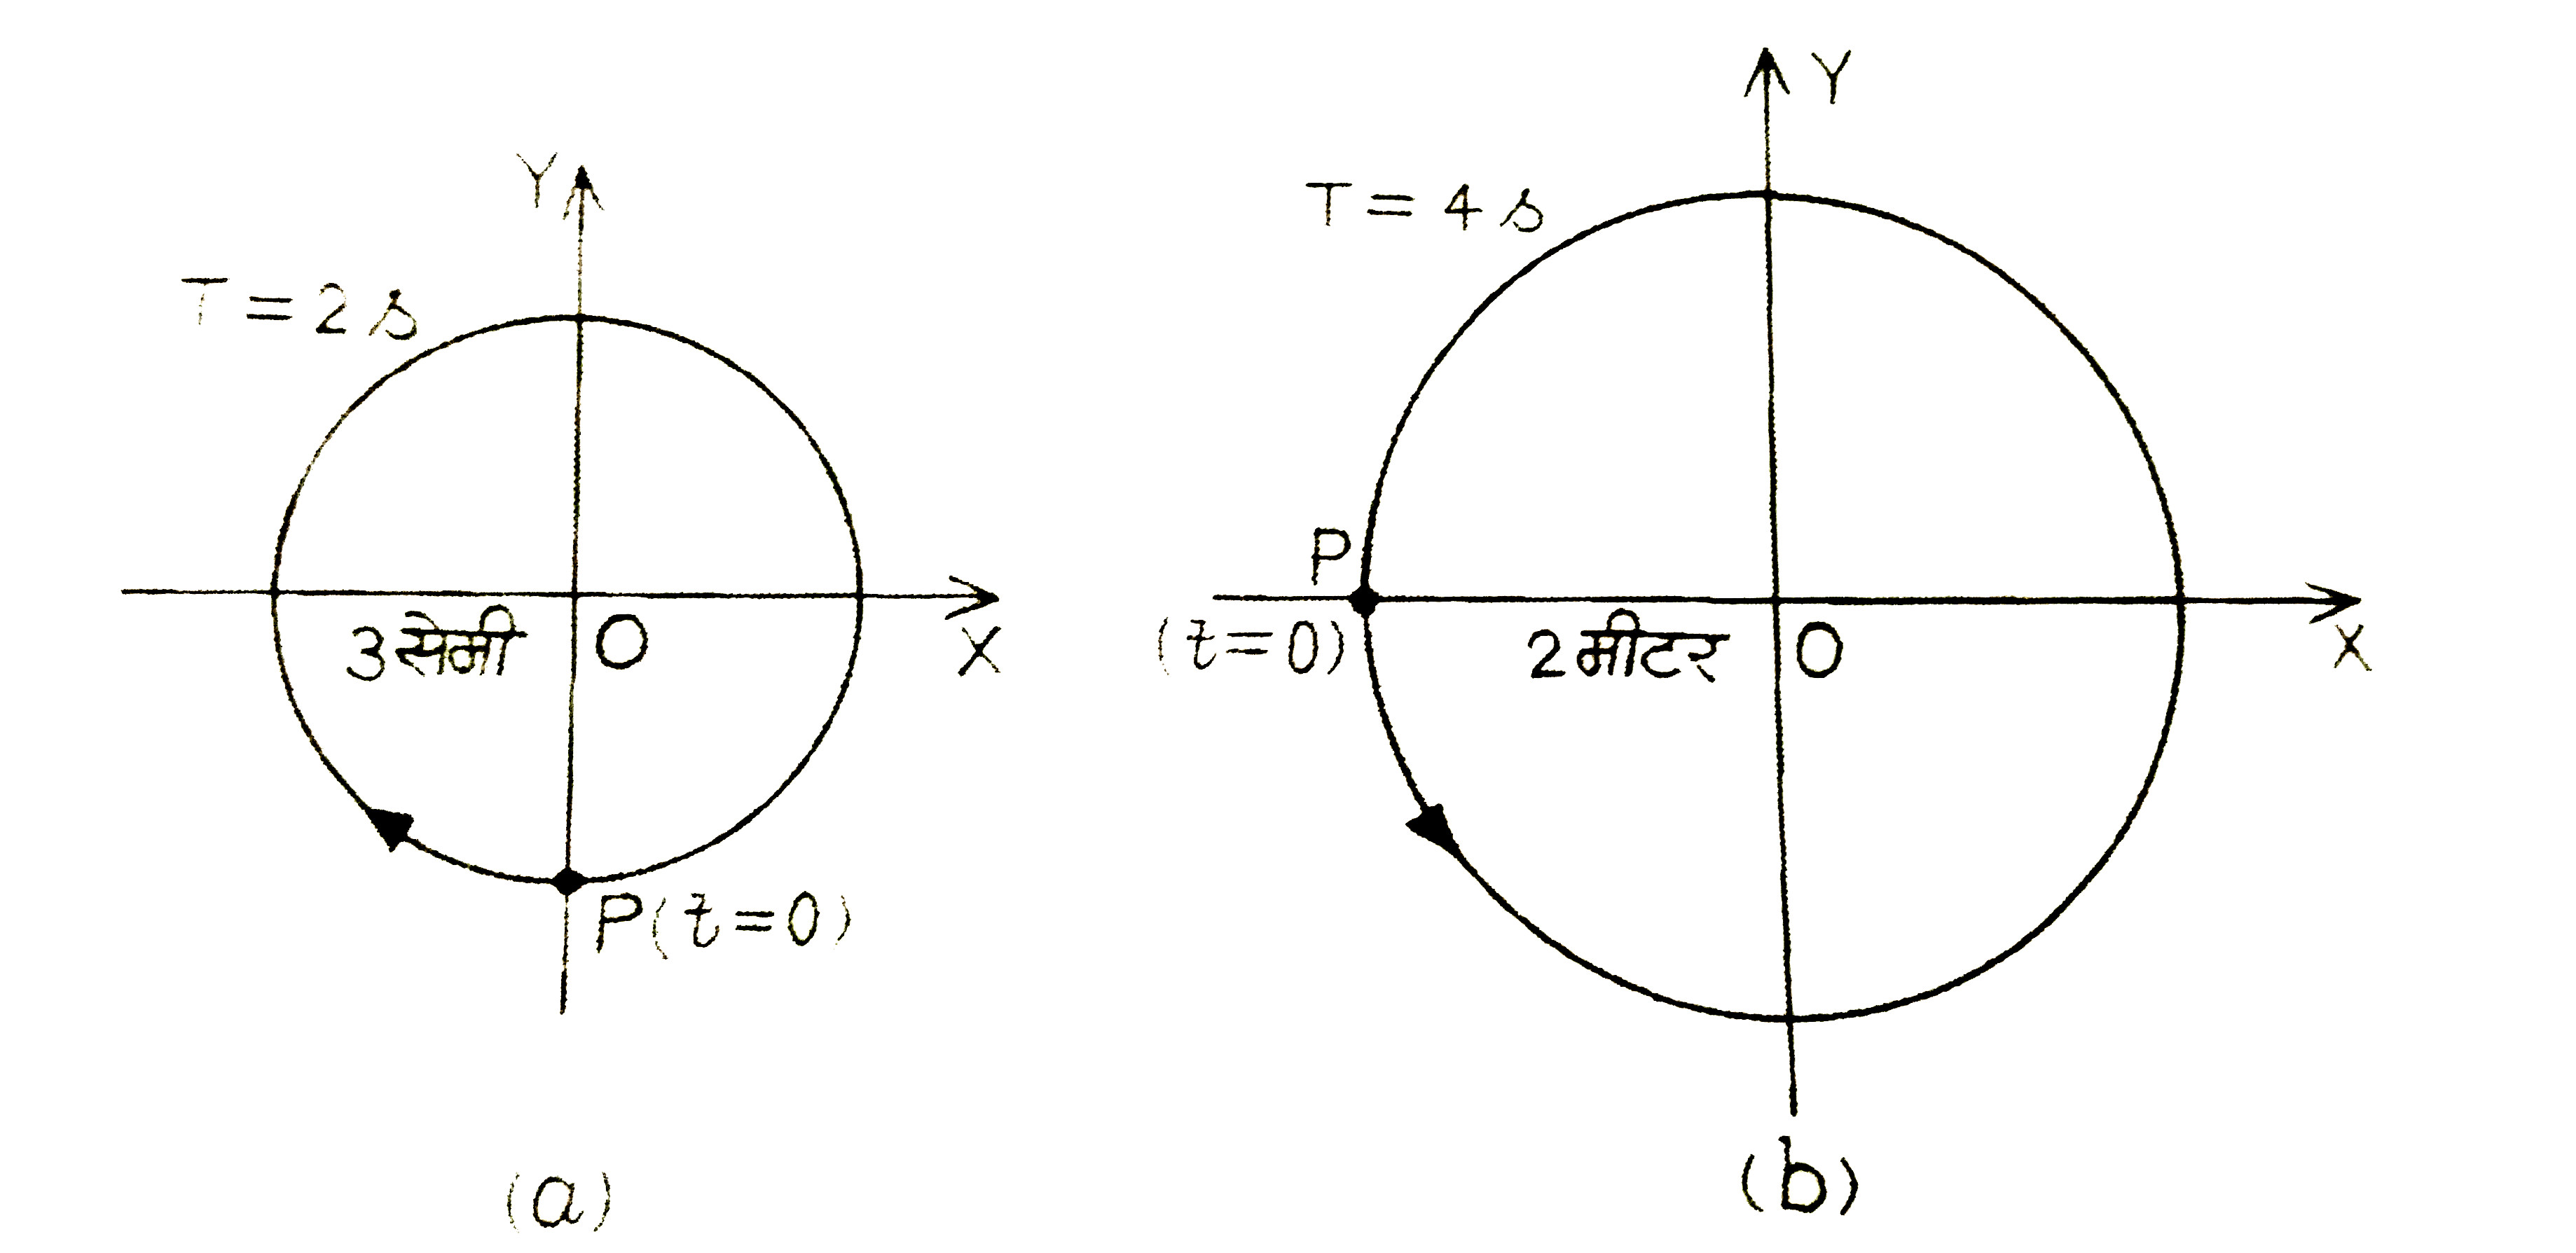 चित्र में दिए गए दो आरेख दो वर्तुल गतियों के तदनुरूपी है। प्रत्येक आरेख पर वृत्त की त्रिज्या , परिक्रमण-काल आरम्भिक स्थिति और परिक्रमण की दिशा दर्शायी गई है। प्रत्येक प्रकरण में , परिक्रमण  करते कण के त्रिज्य-सदिश के X-अक्ष पर प्रक्षेप की तदनुरूपी सरल आर्वत गति ज्ञात कीजिए ।